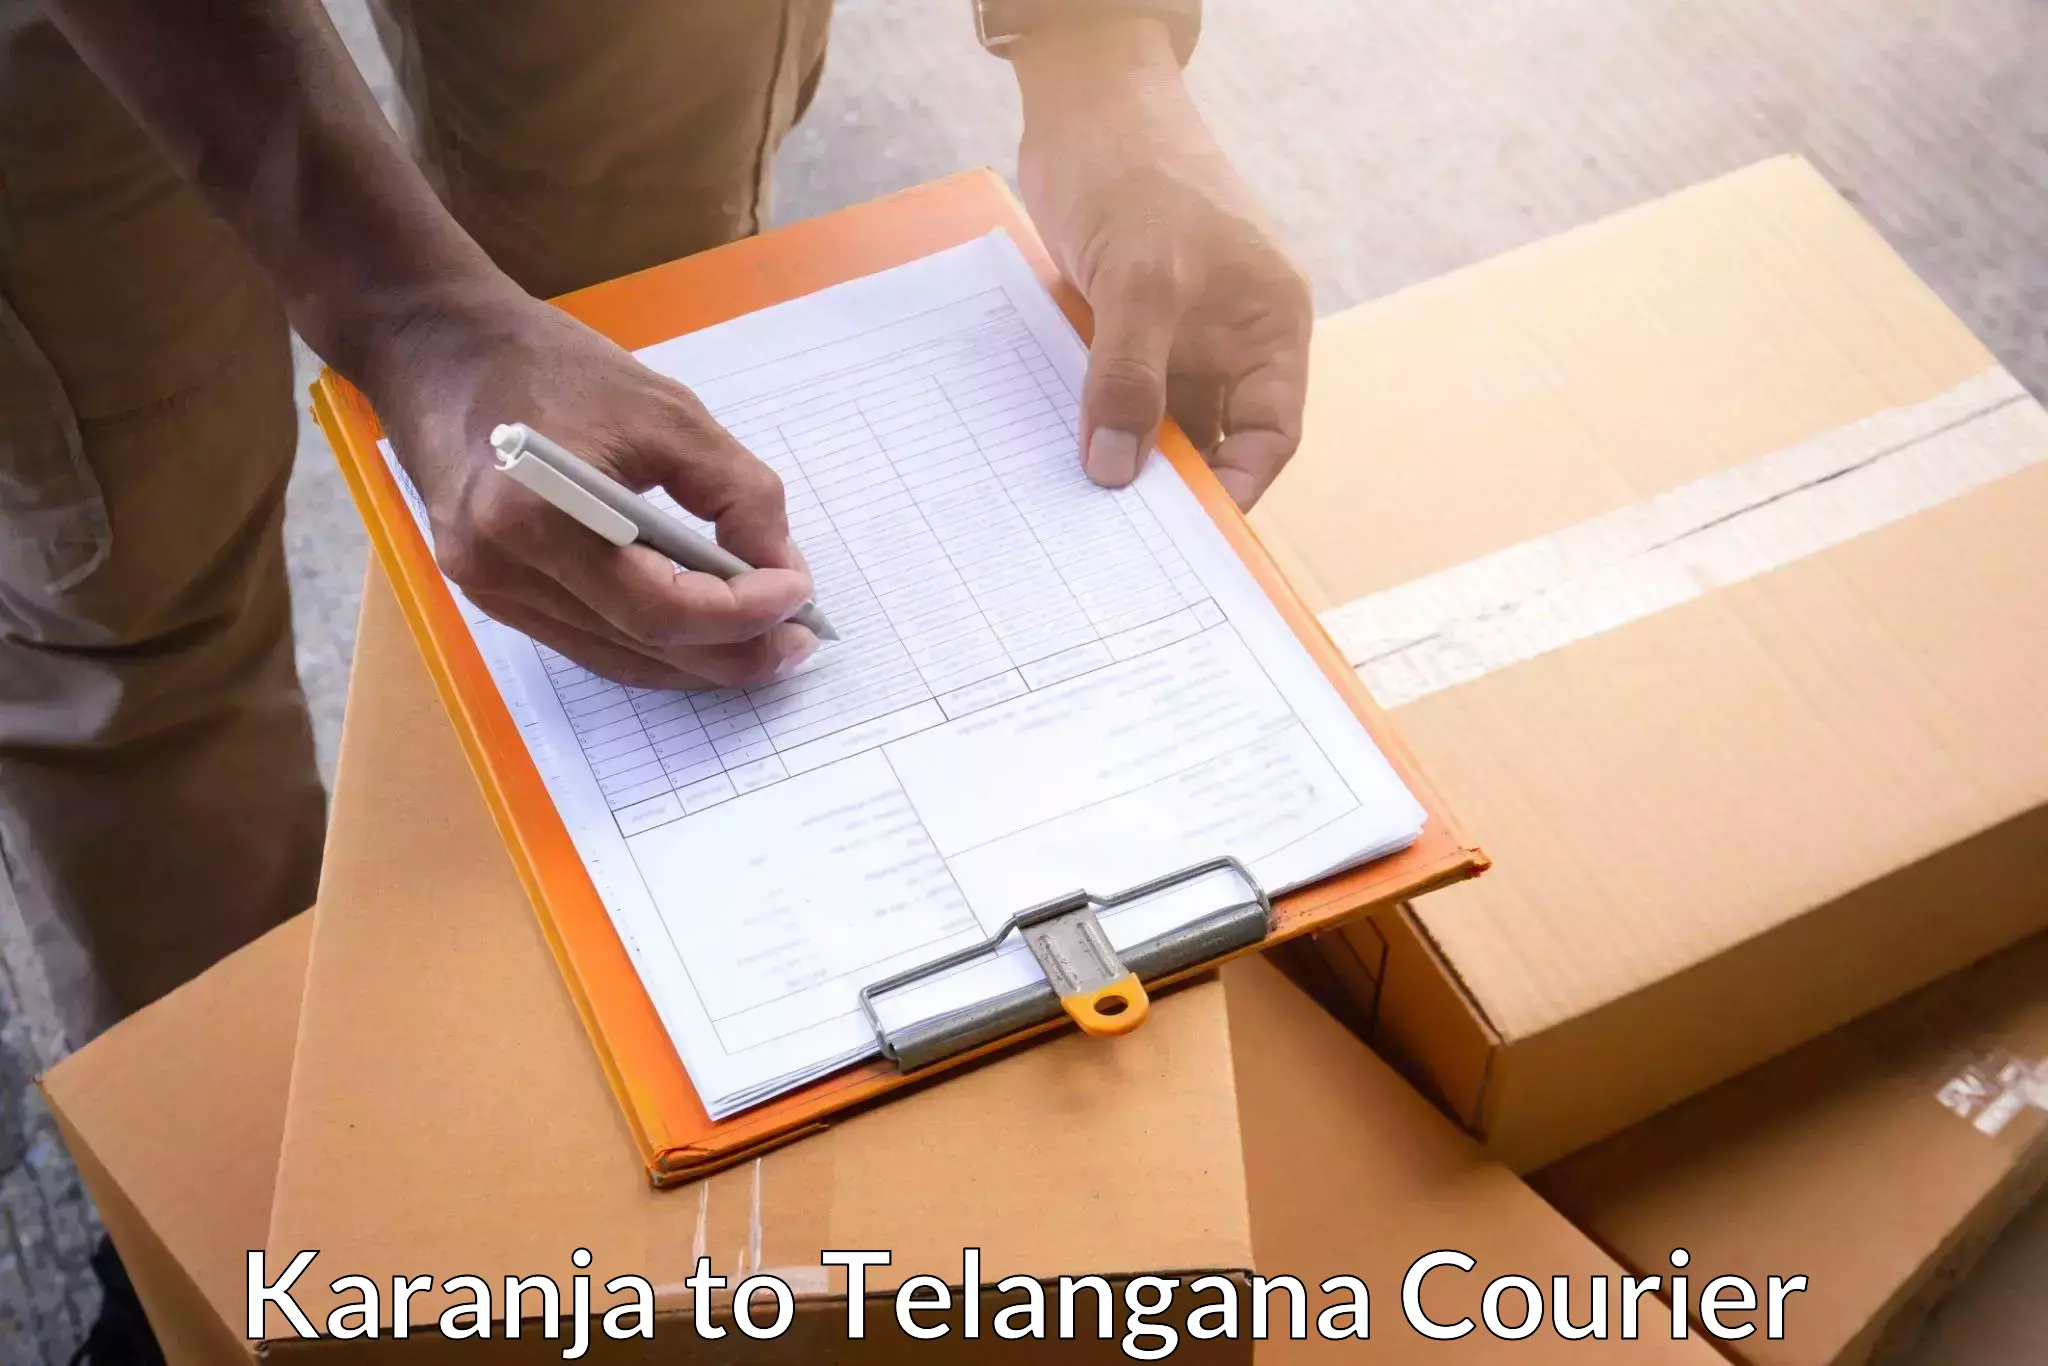 Customer-focused courier Karanja to Kakeshwaram